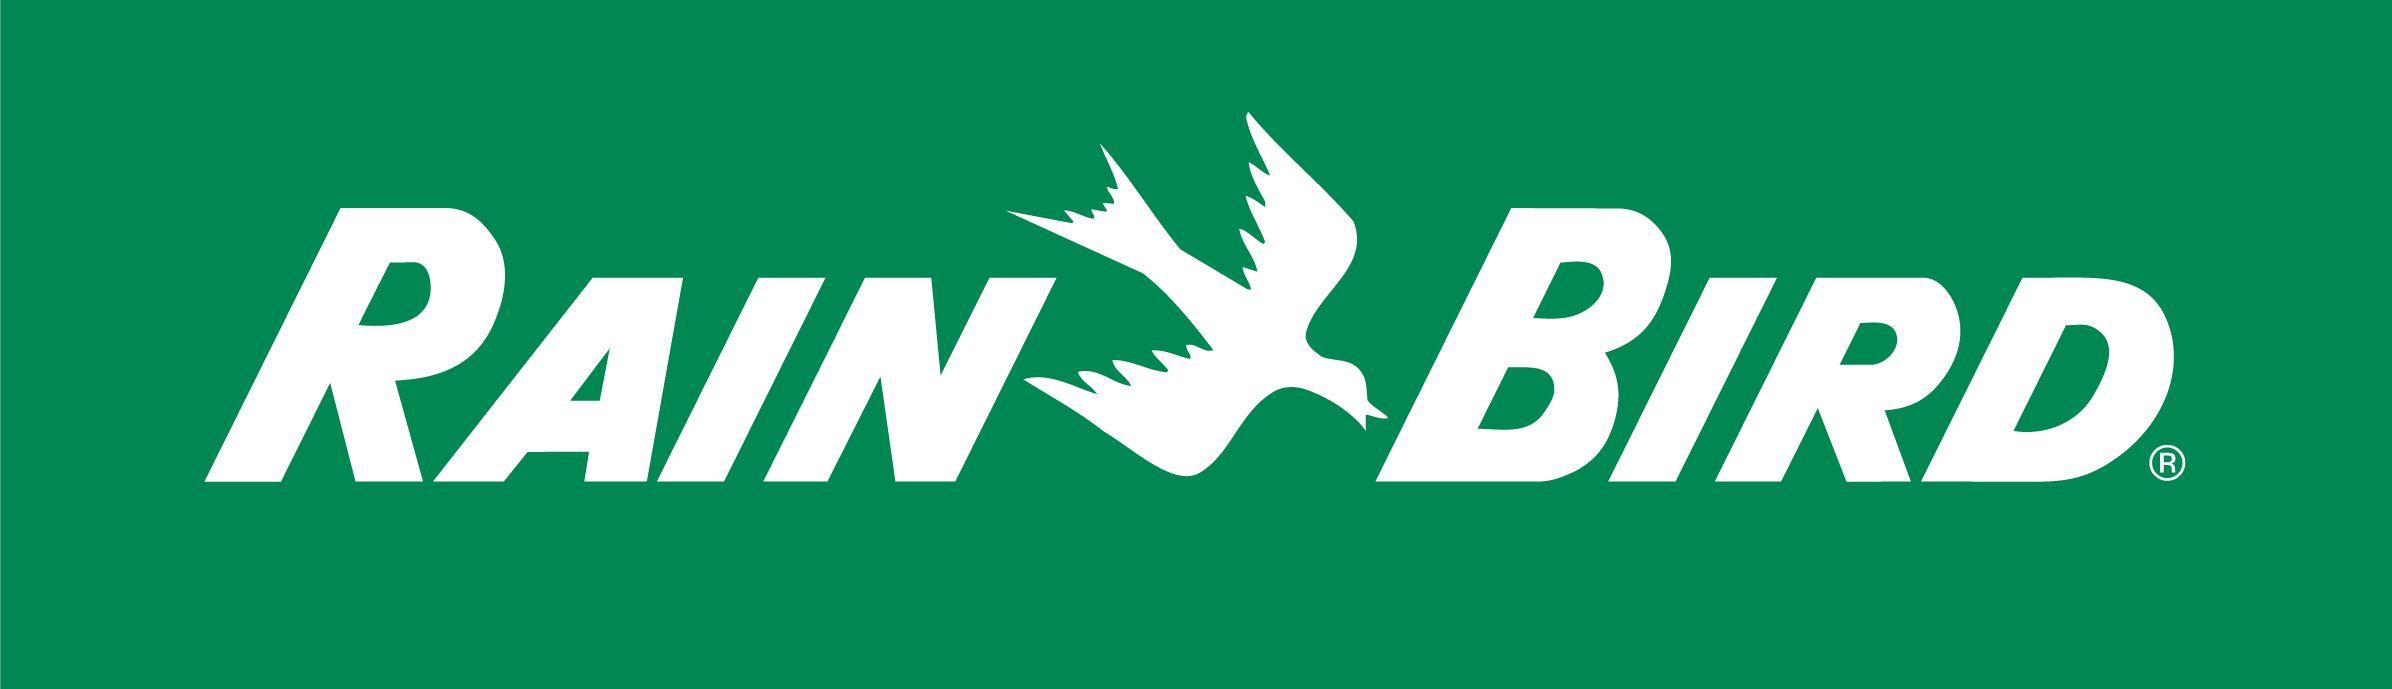 More Birds Logo - Rain Bird Logo | Rain Bird